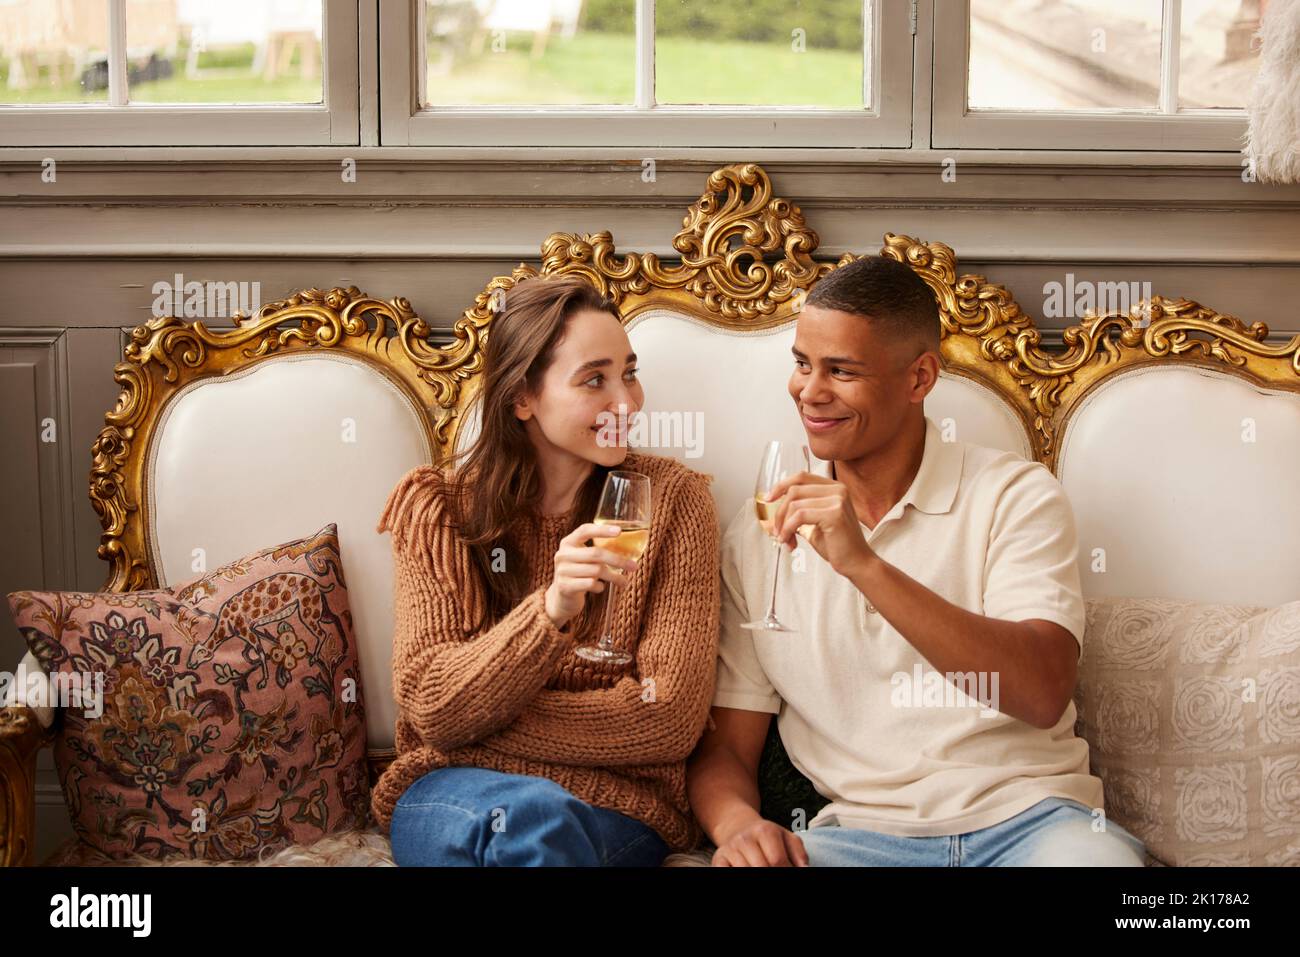 Couple celebrating in luxury house Stock Photo